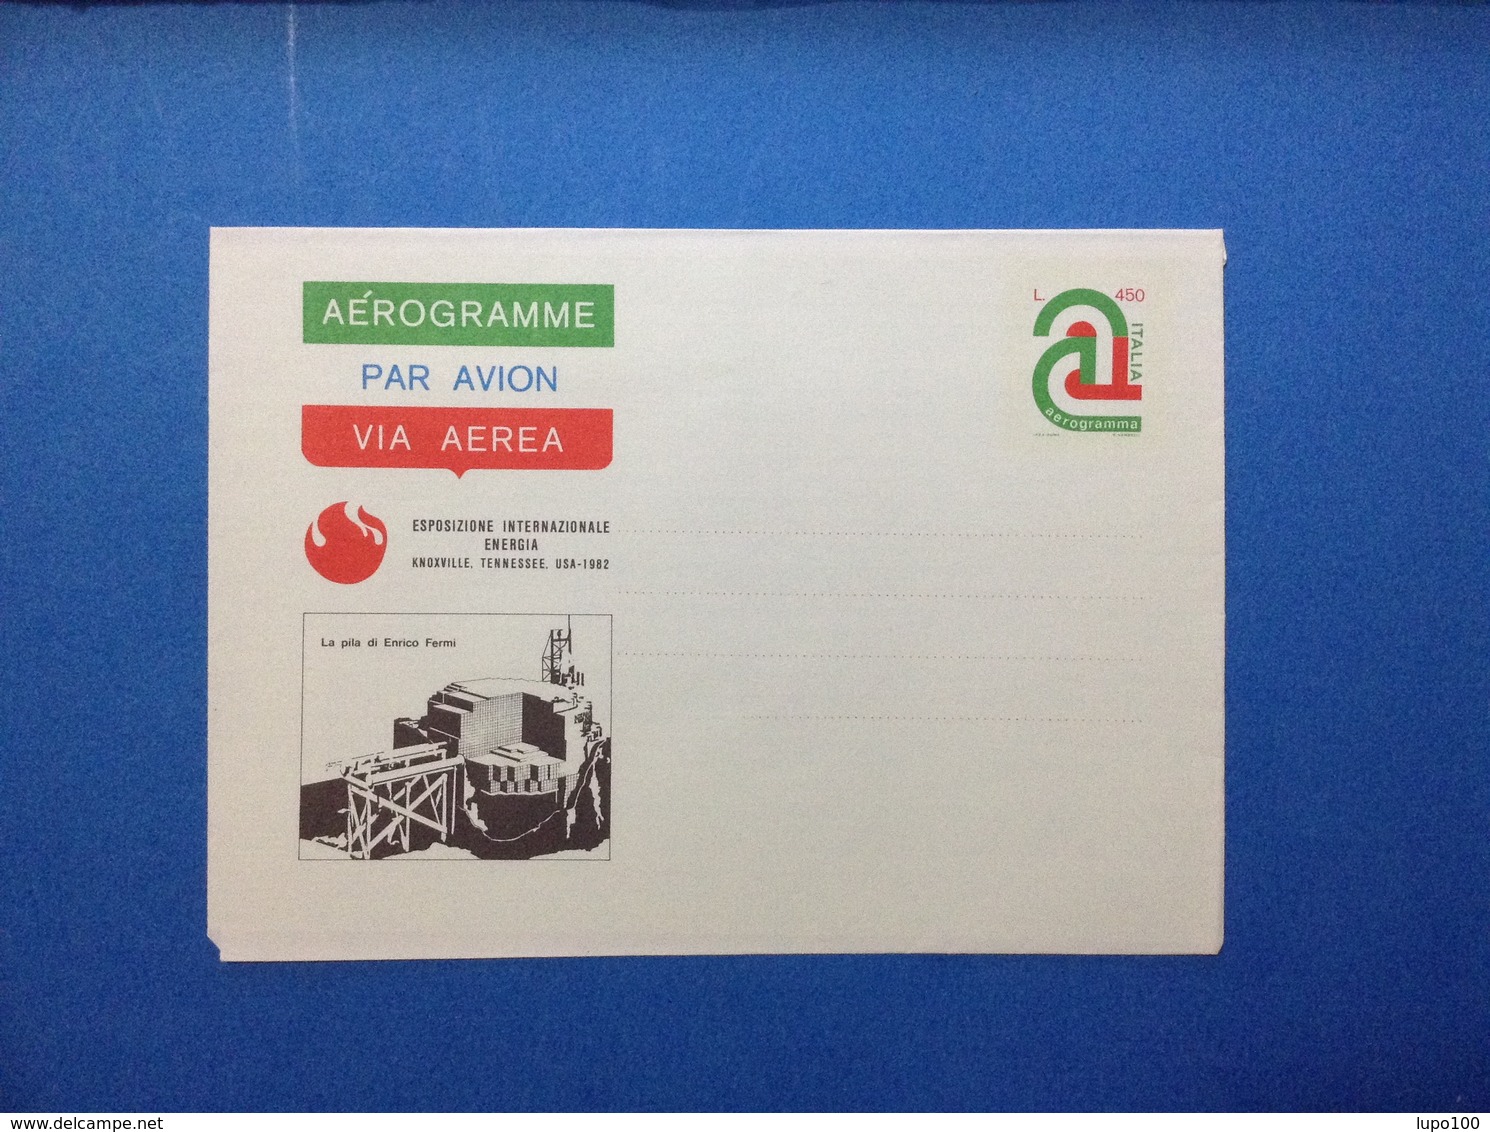 1982 ITALIA AEROGRAMMA POSTALE NUOVO NEW MNH** KNOXVILLE LA PILA DI ENRICO FERMI 450 LIRE - Interi Postali